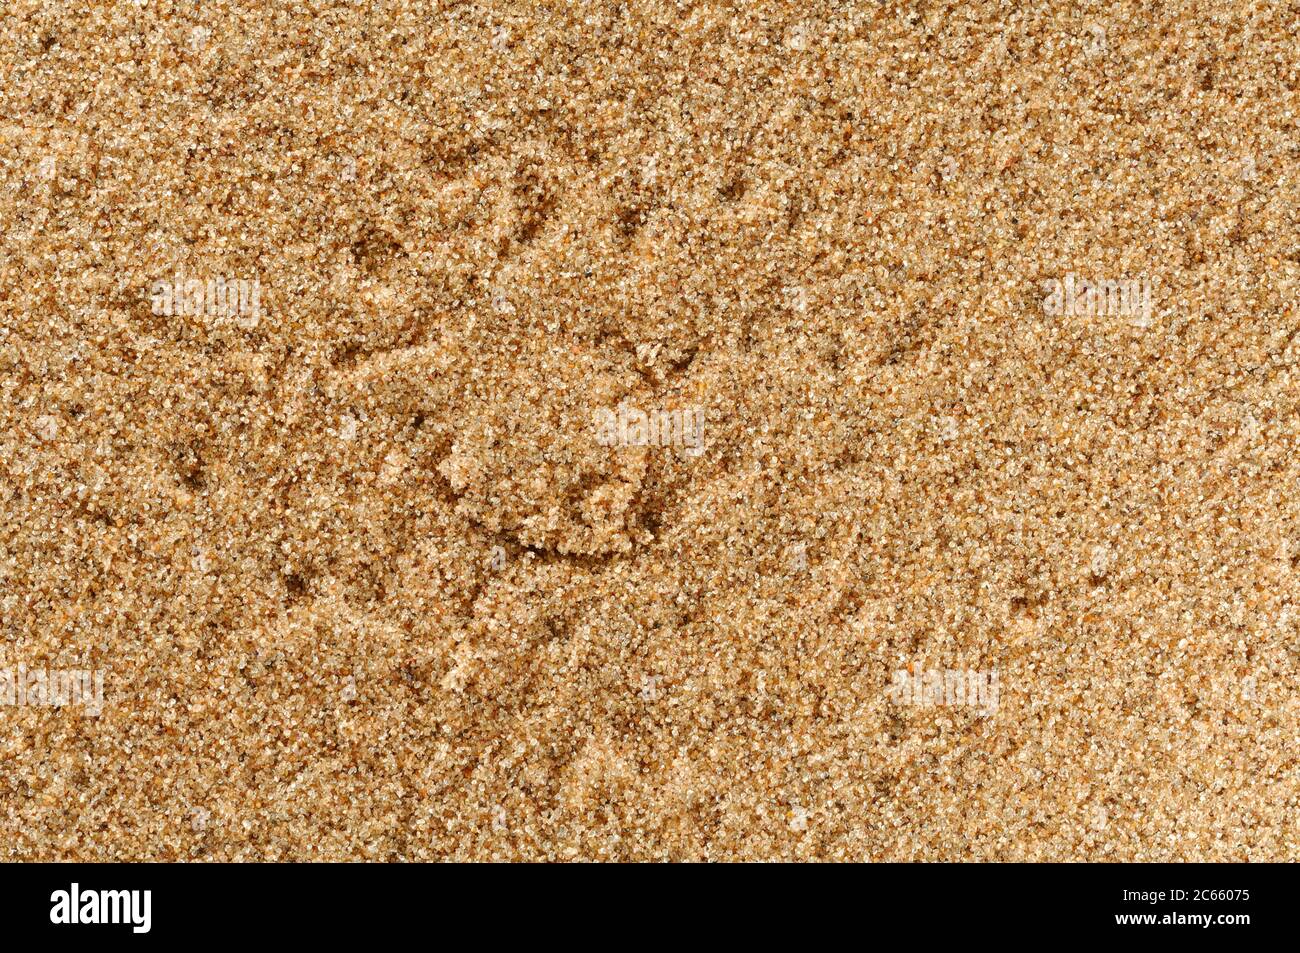 Madriguera de araña duna (Leucorquestis arenicola) en las primeras horas de la mañana, las pistas en la arena cuentan la historia de las actividades nocturnas en el desierto. Foto de stock